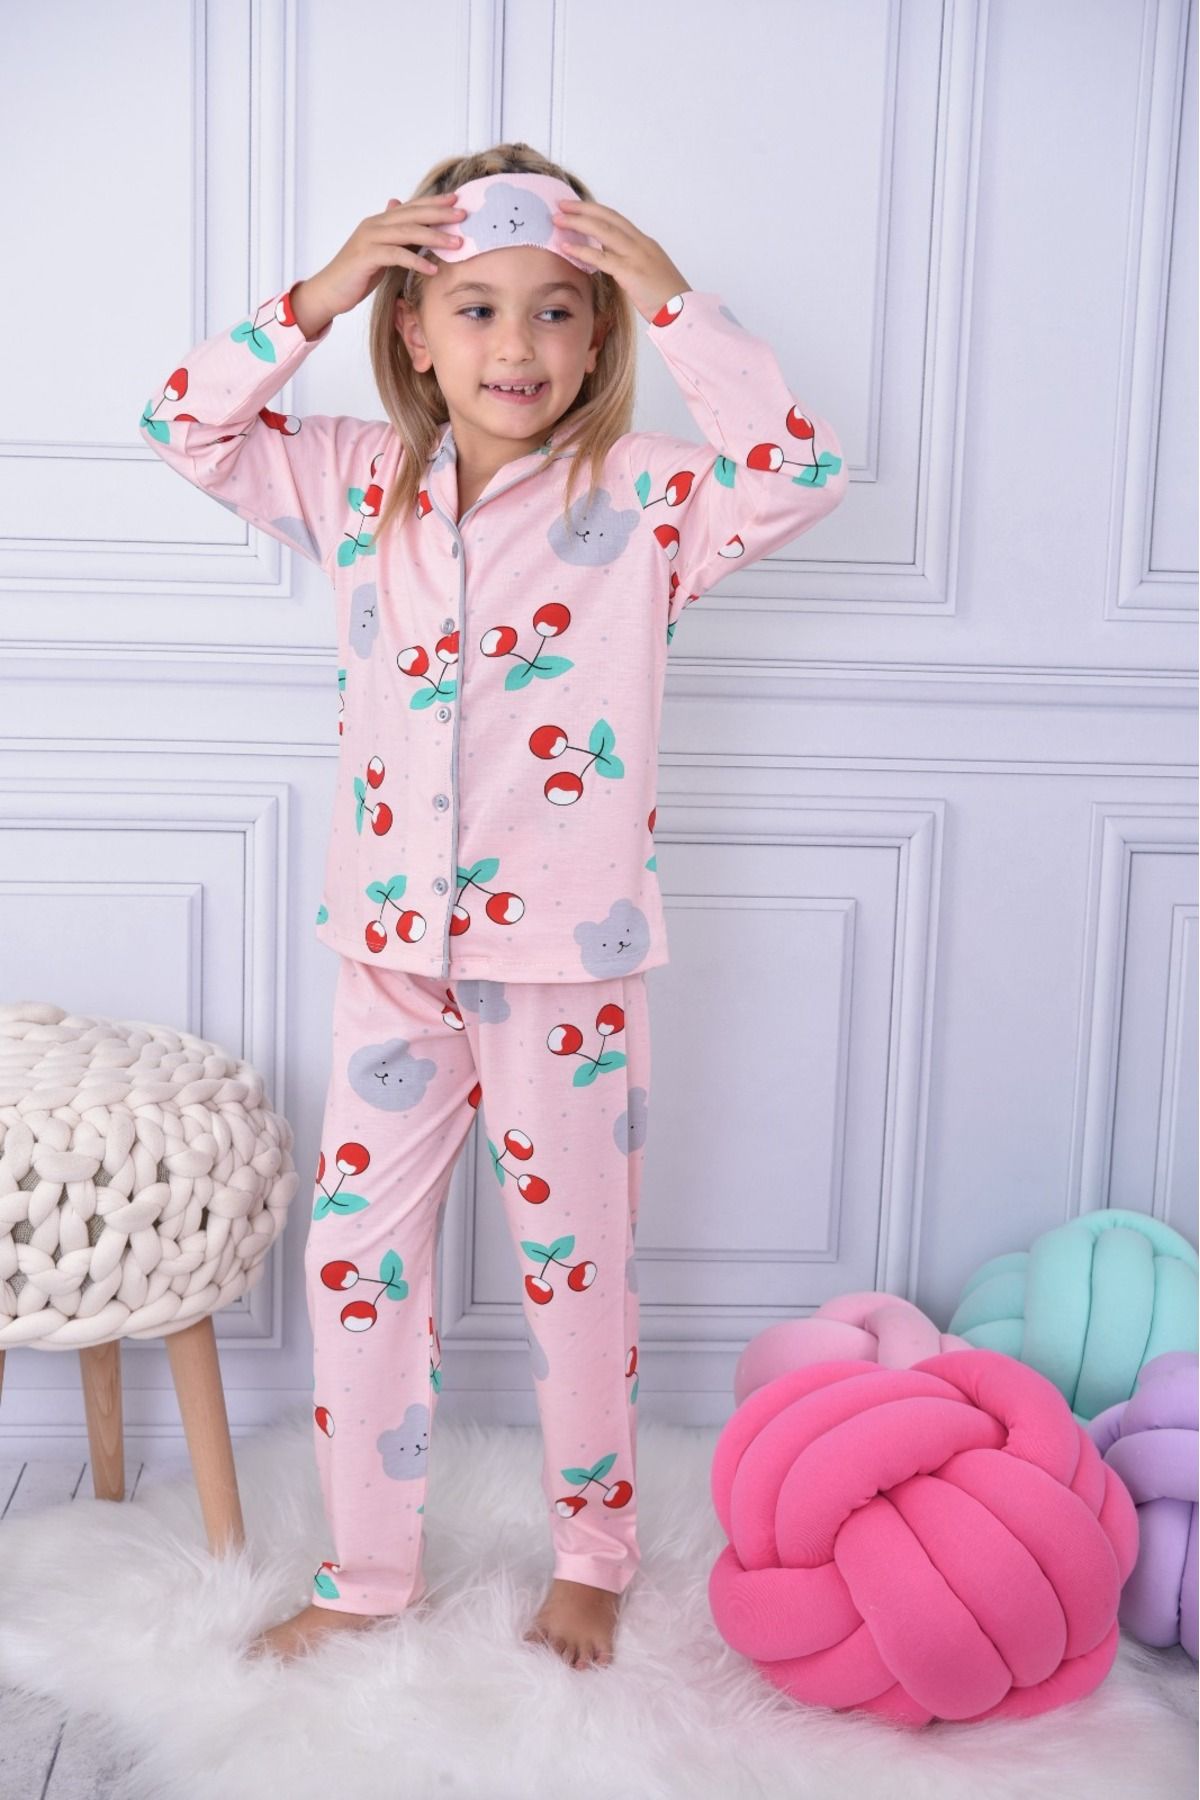 ARCAN Kız Çocuk Kirazlı Pijama Takımı - Beden Tablosu Resimlerde Mevcuttur